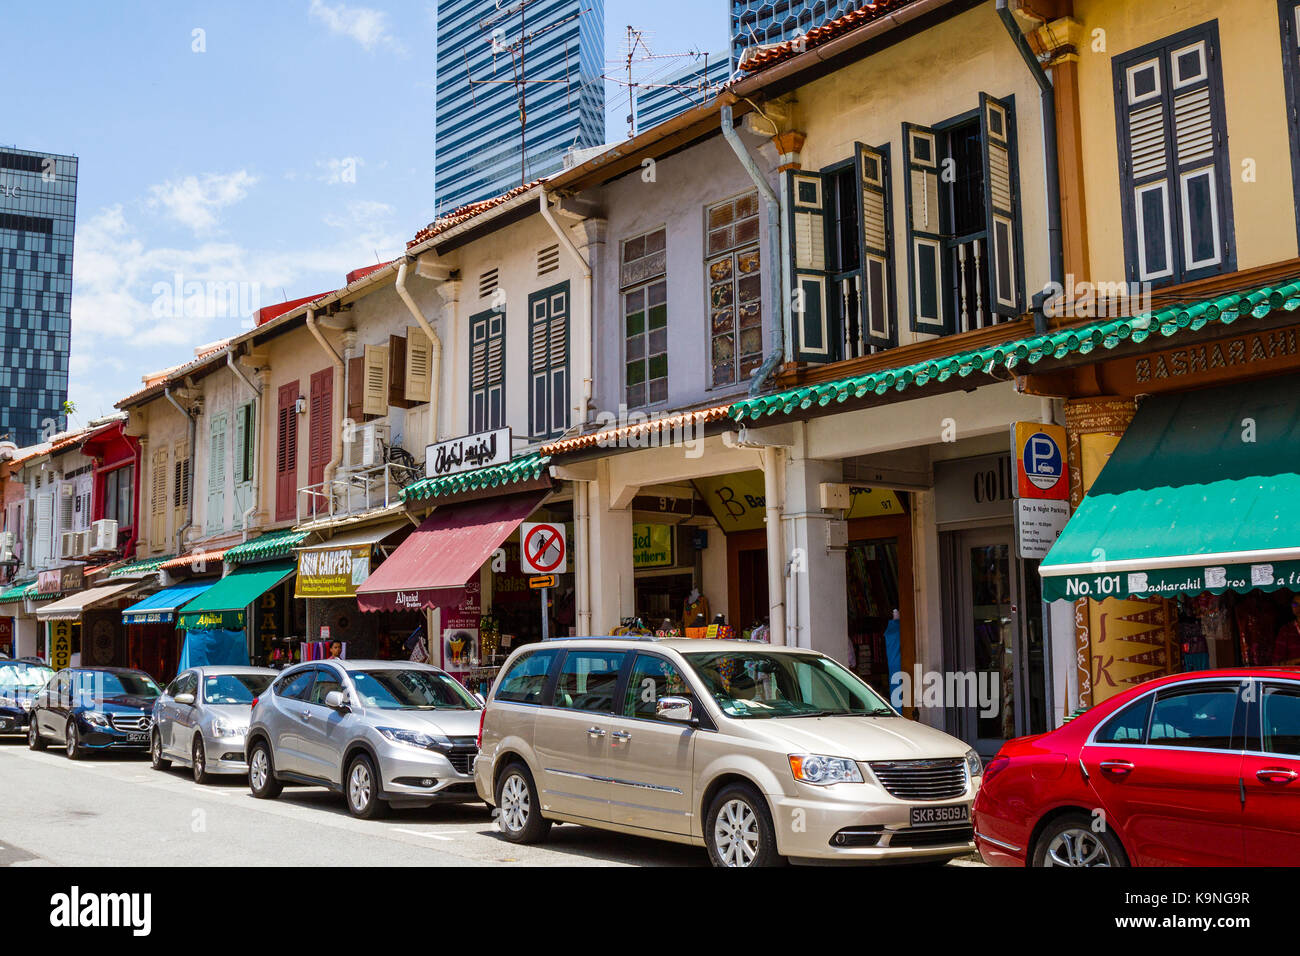 Singapour - septembre 7, 2017 : restauré avec goût le long de la rue arabe dans l'enclave musulmane de Kampong Glam conservent leur colonial historique architectura Banque D'Images